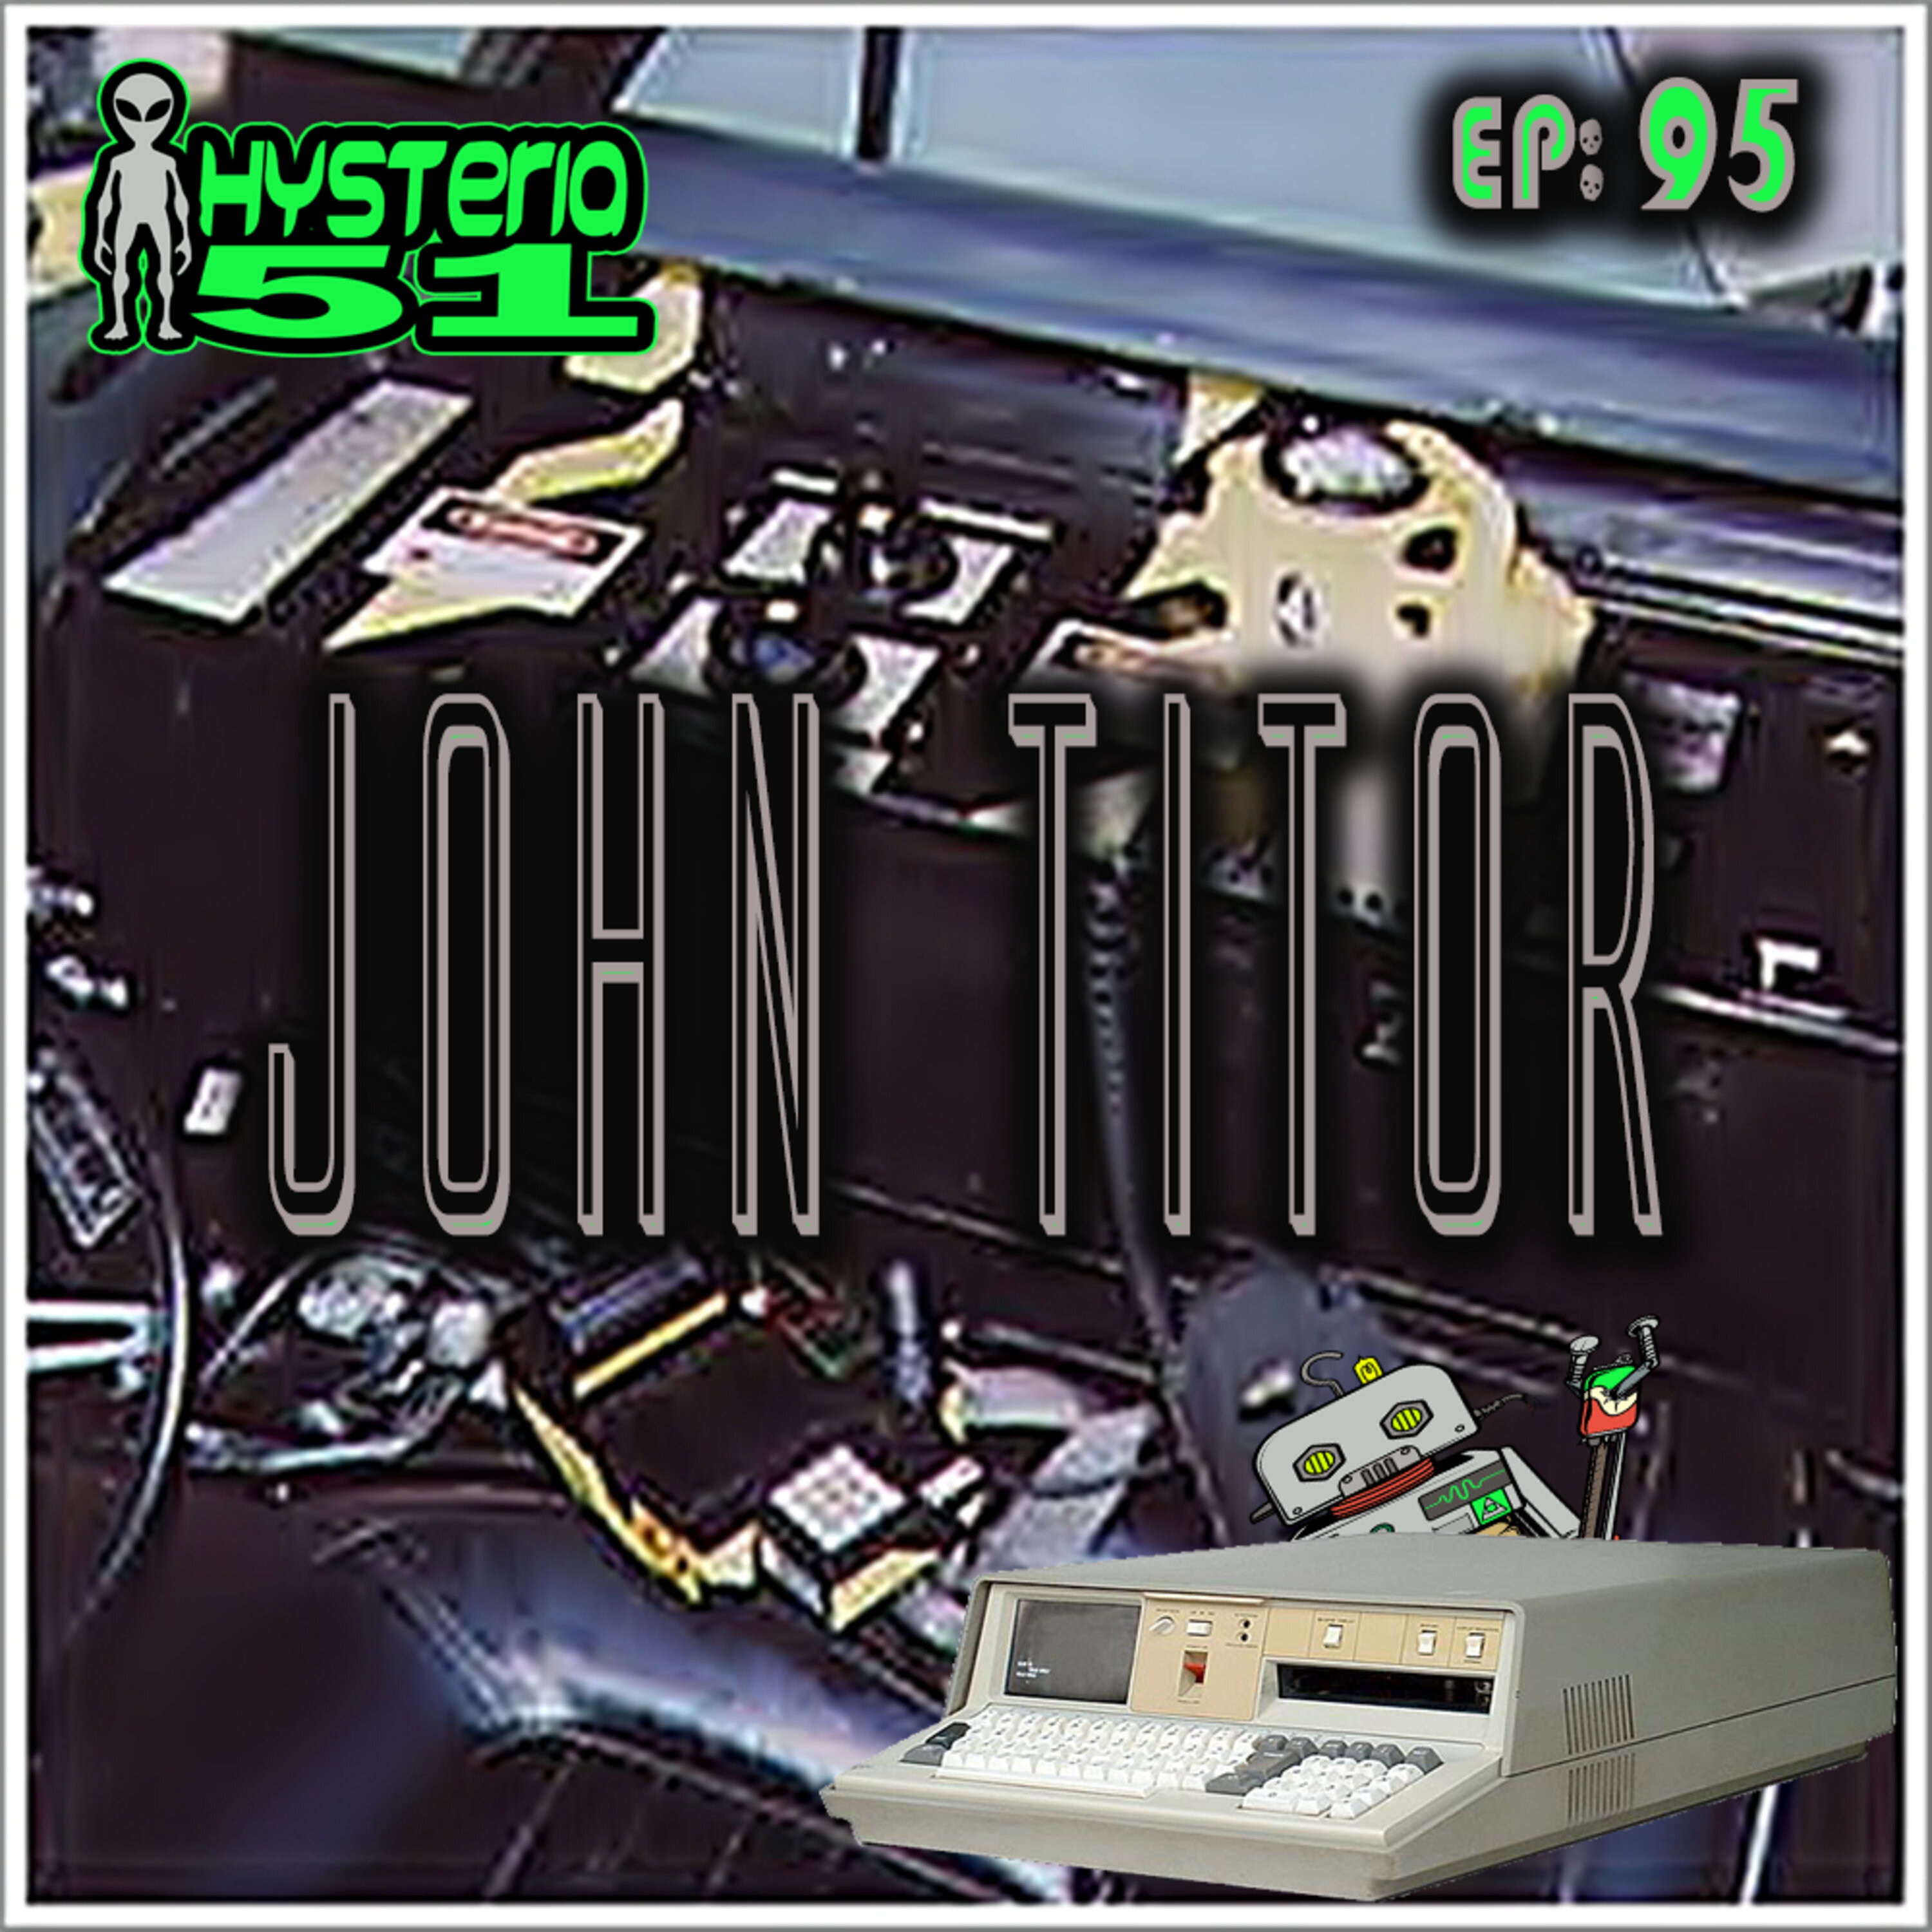 John Titor: Time Traveler or Internet Troll? | 95